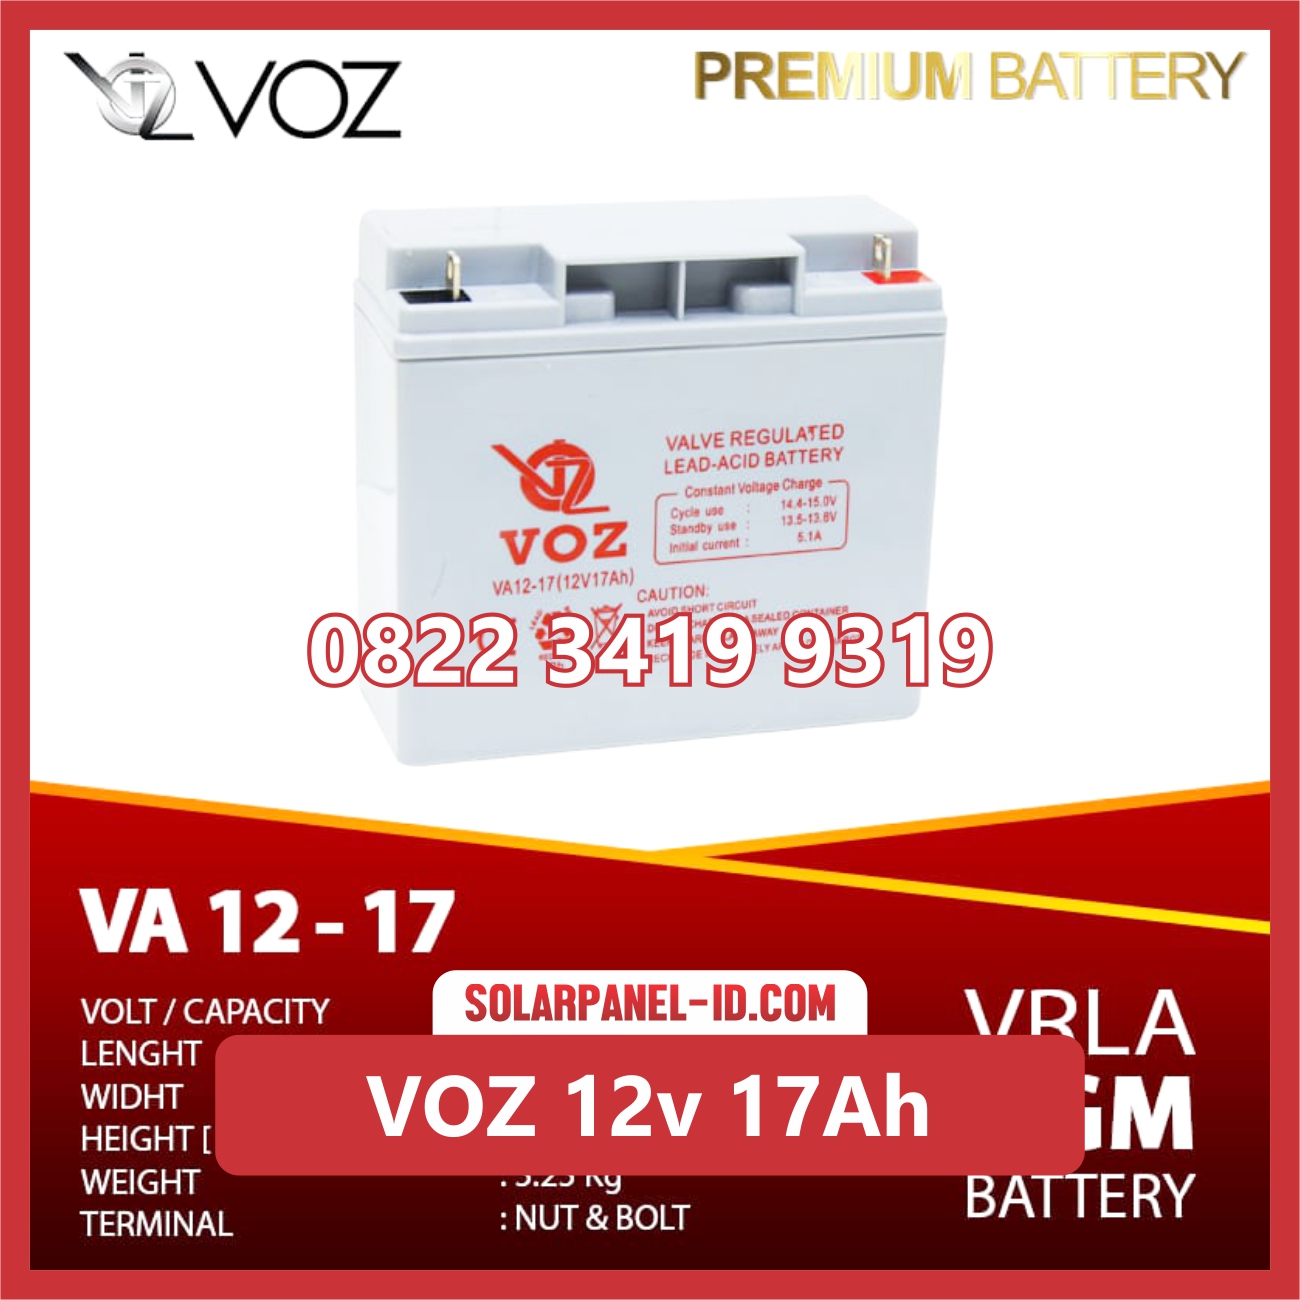 VOZ baterai kering 12v 17Ah baterai solarcell